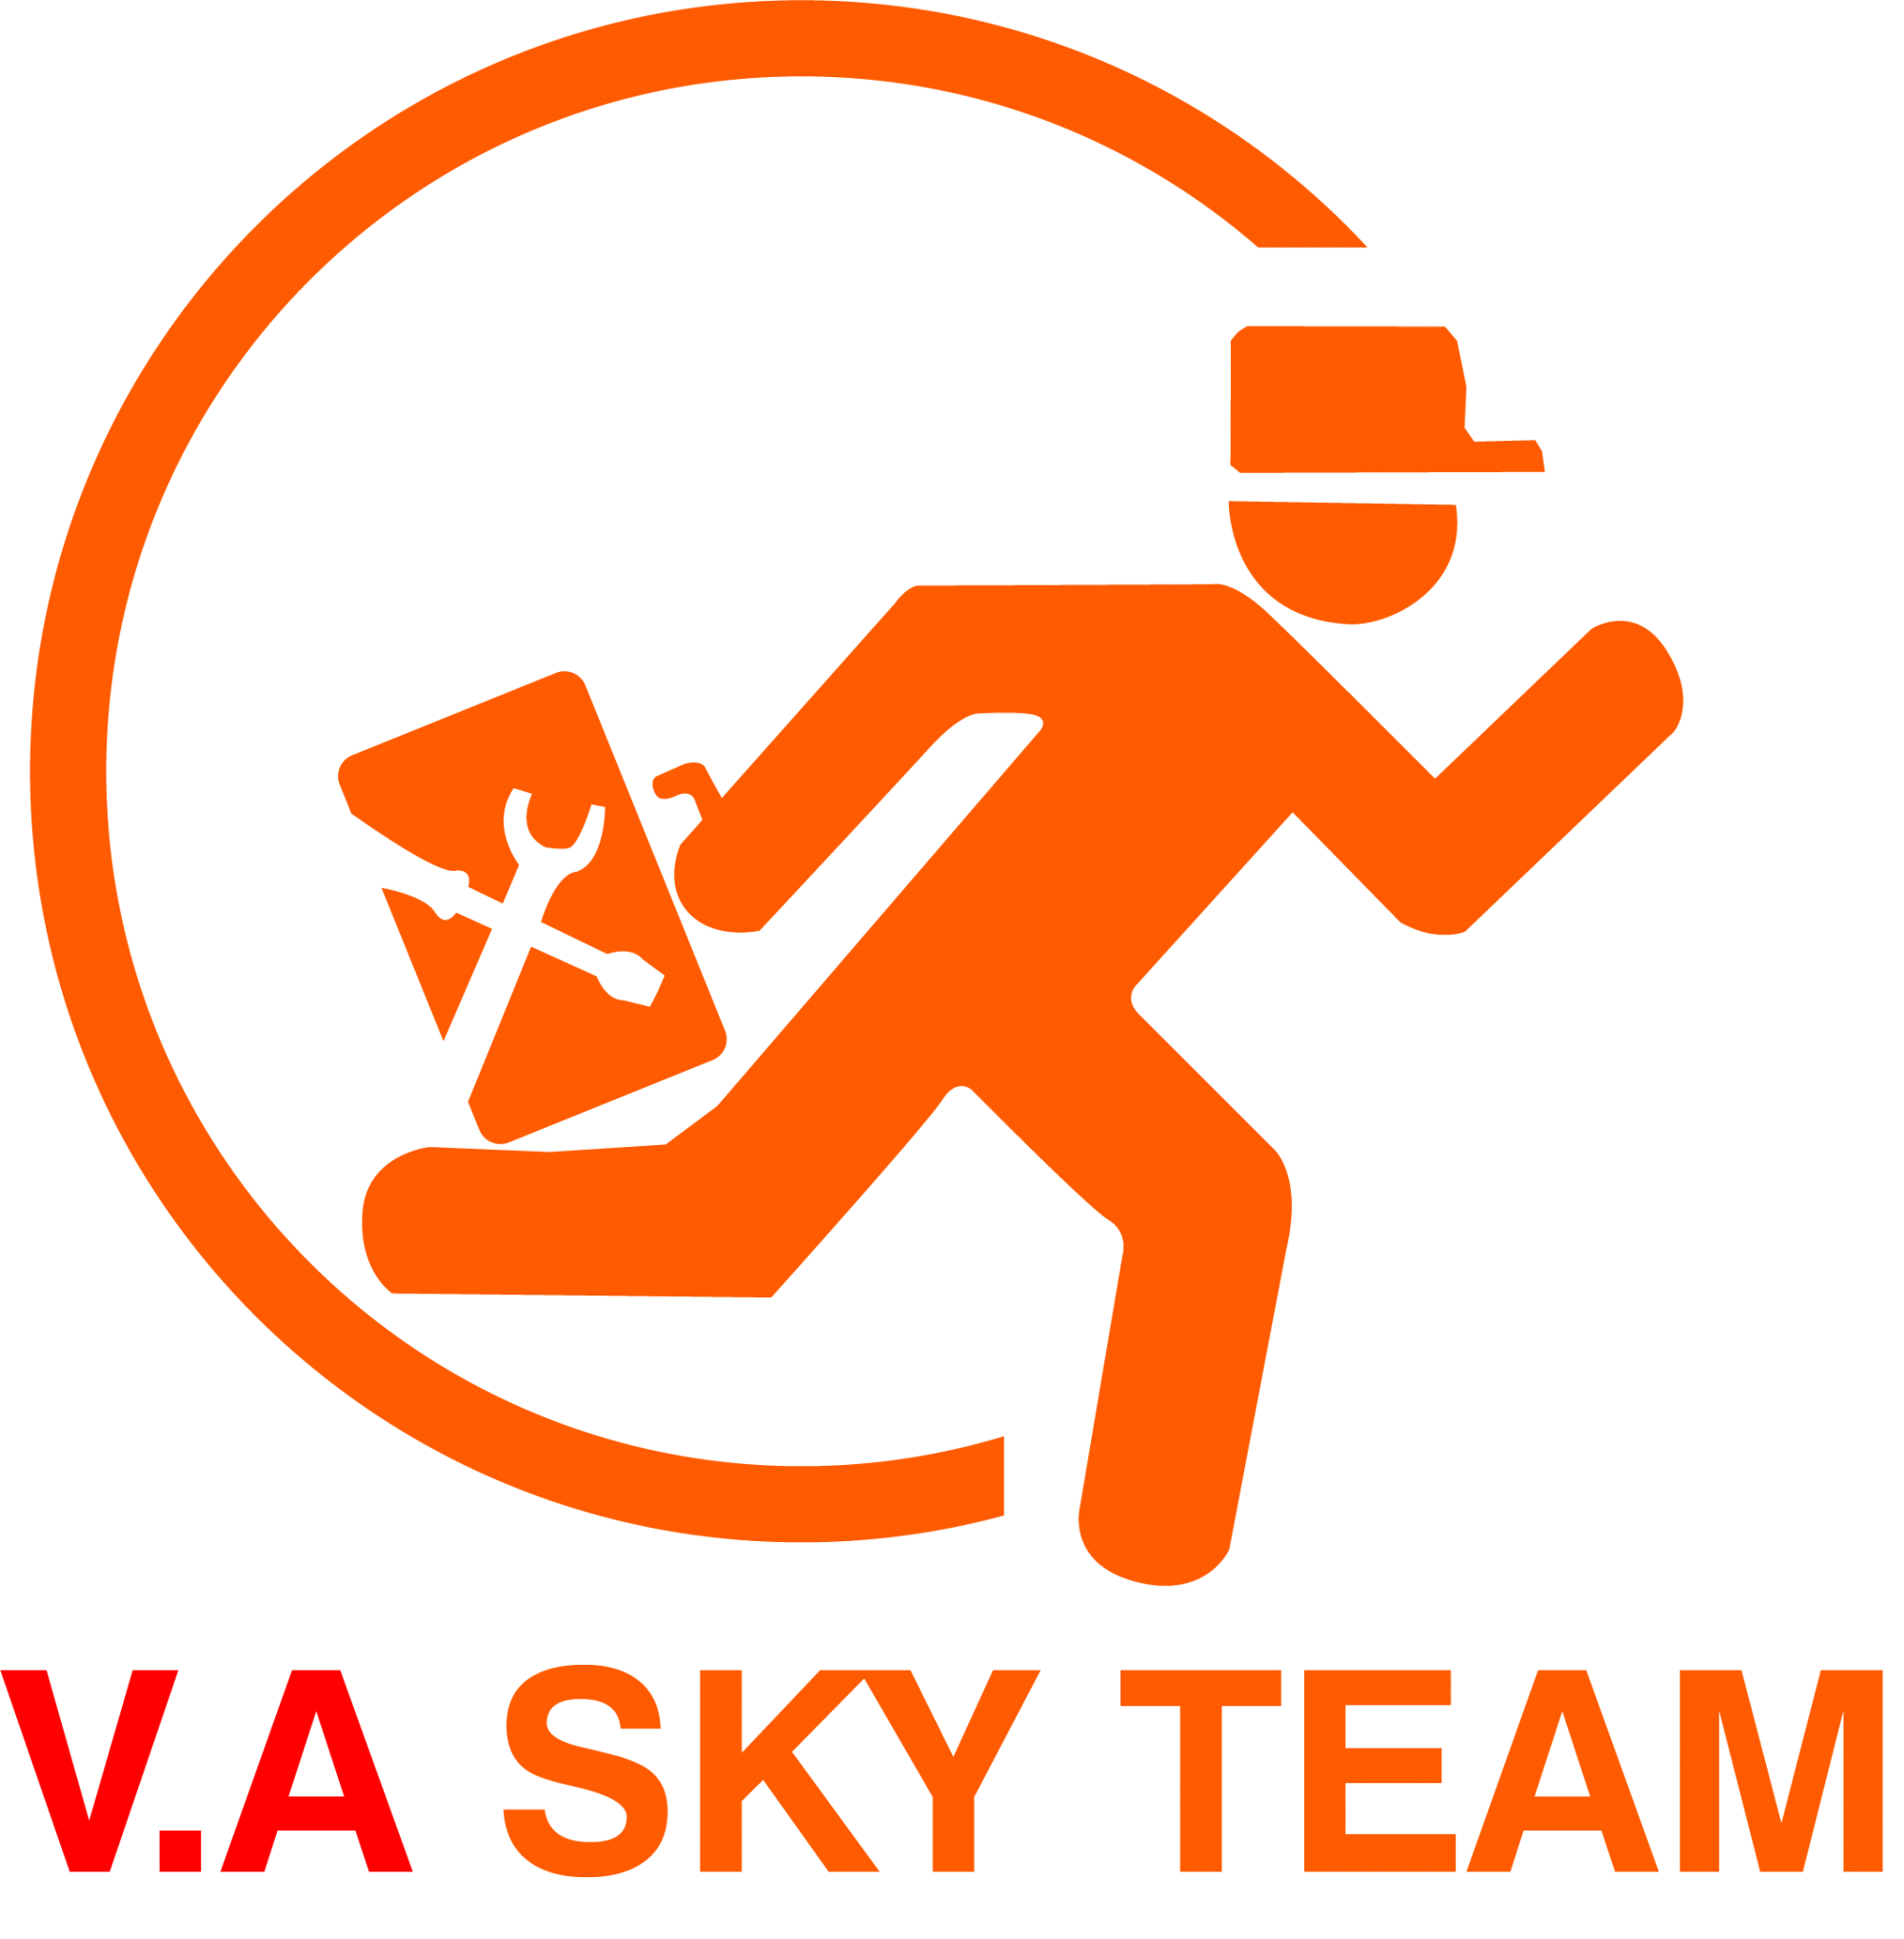 VA SKY TEAM - Hỗ trợ kỹ thuật. Bảo hành tận nơi, siêu tốc, miễn phí